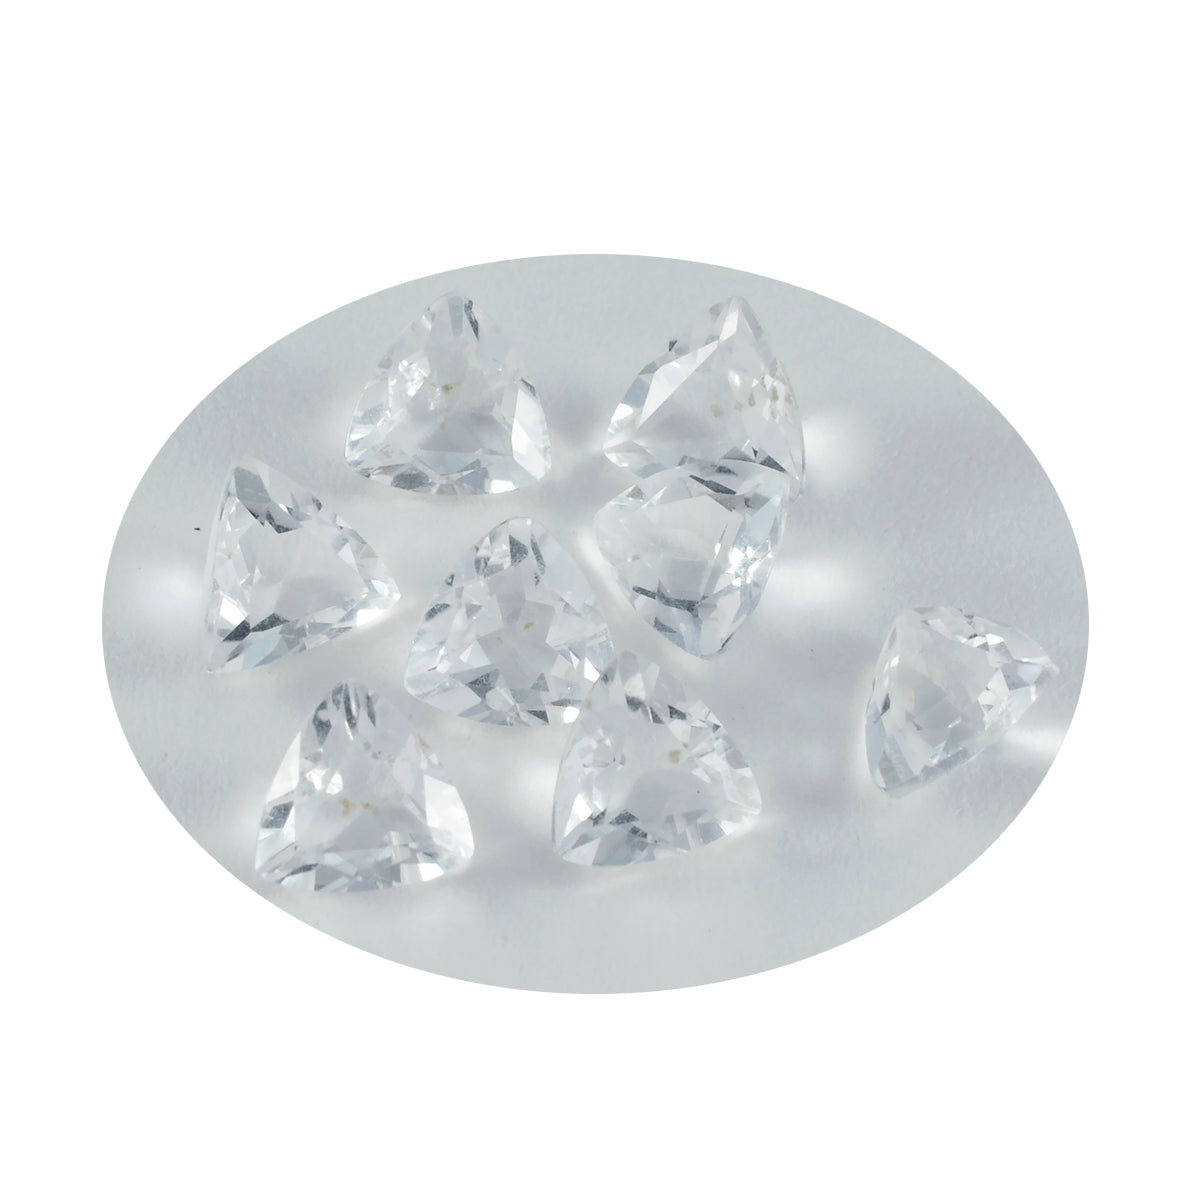 riyogems 1pc ホワイト クリスタル クォーツ ファセット 9x9 mm 兆形状の美しさの品質ルース宝石